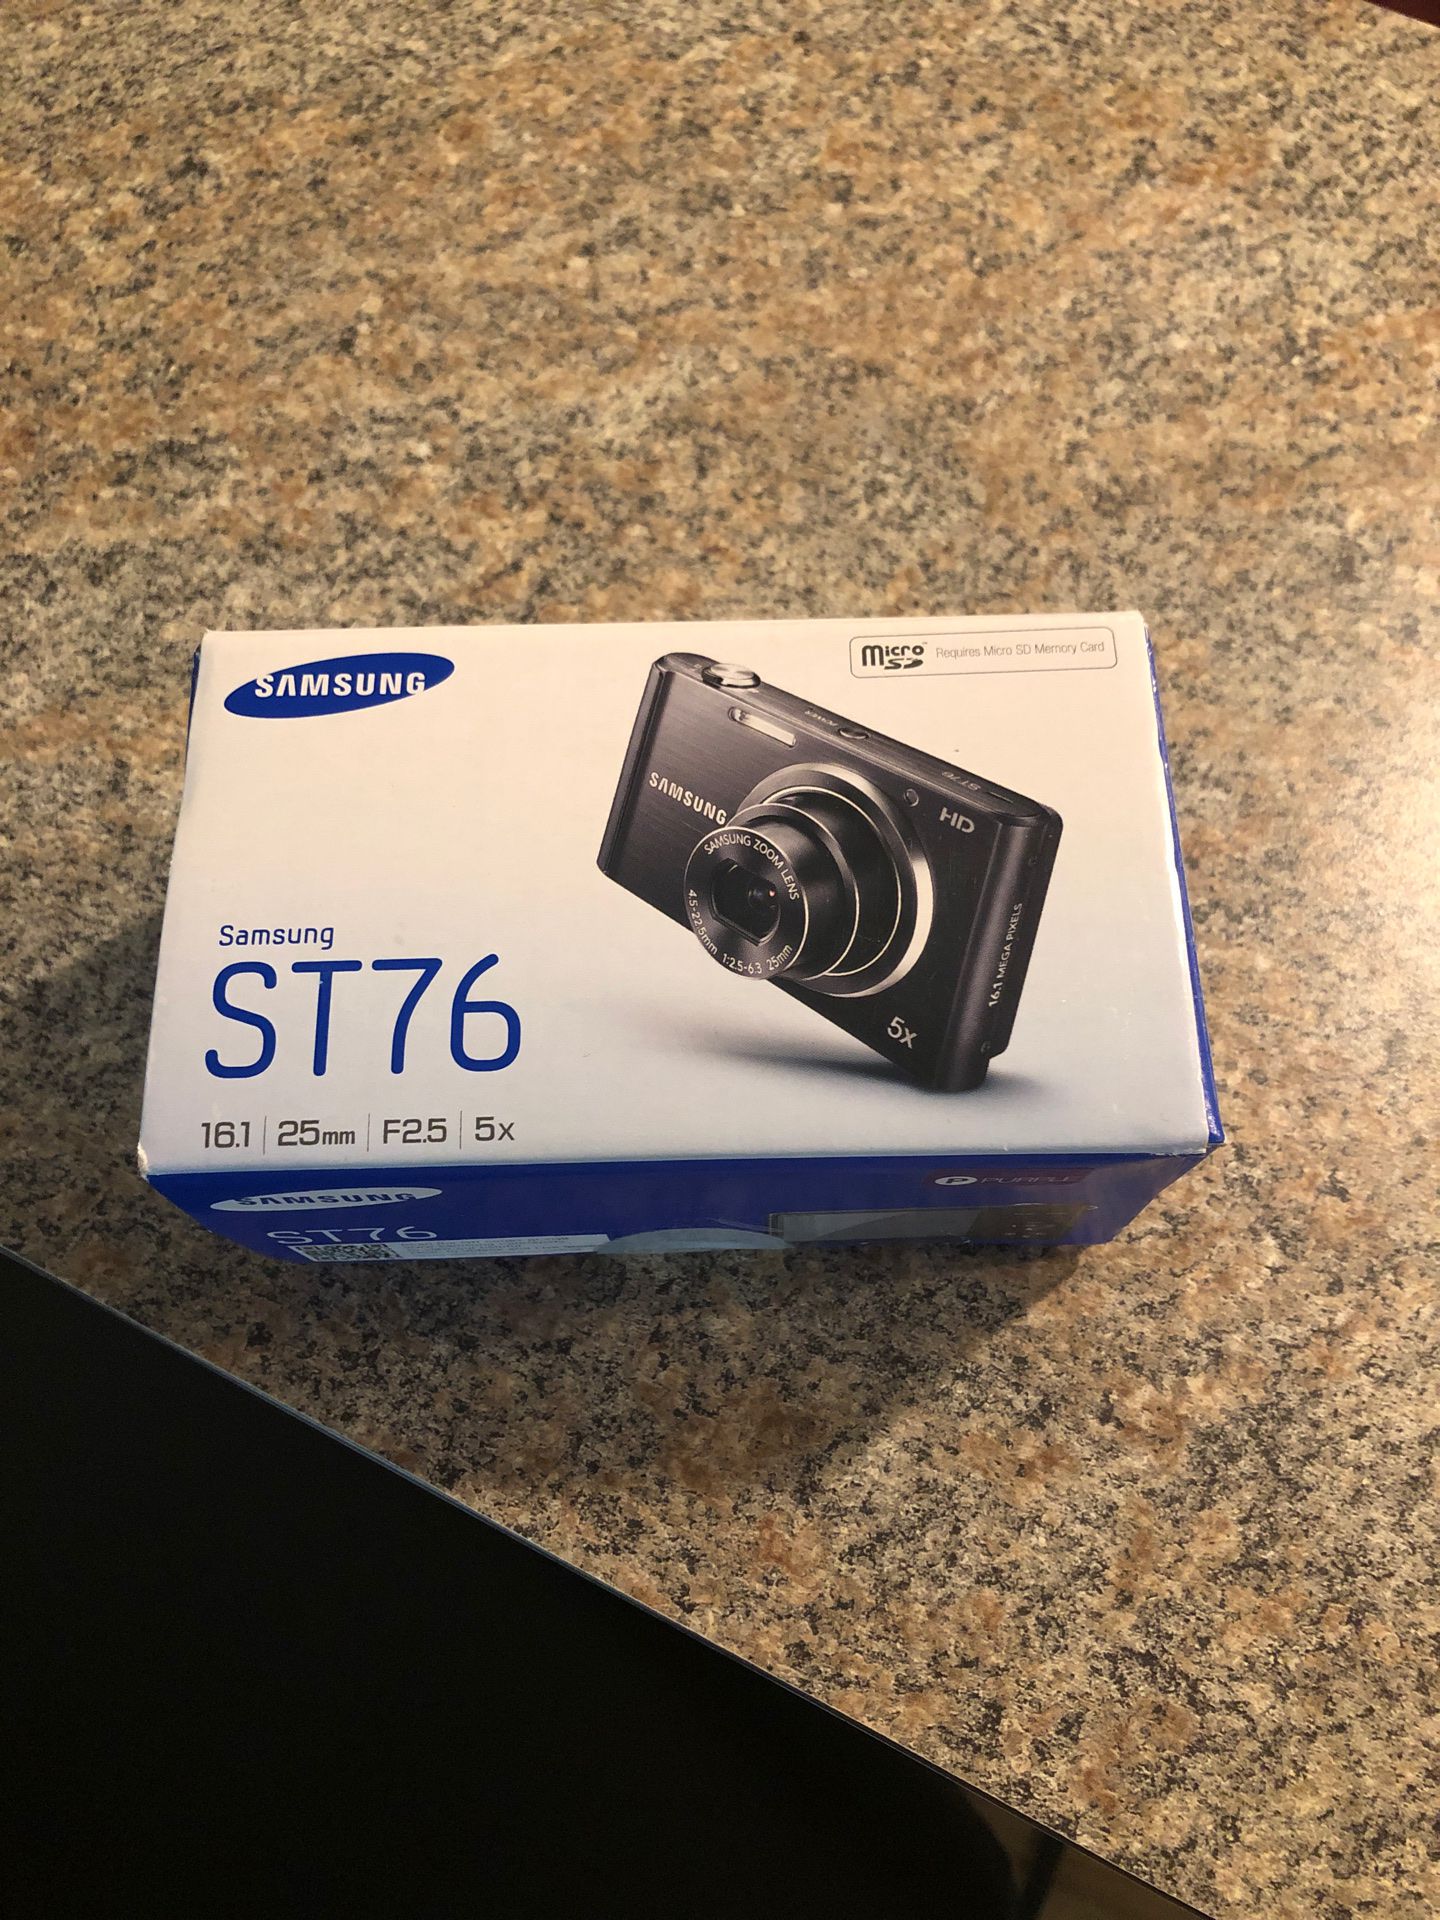 samsung st76 camera brand new